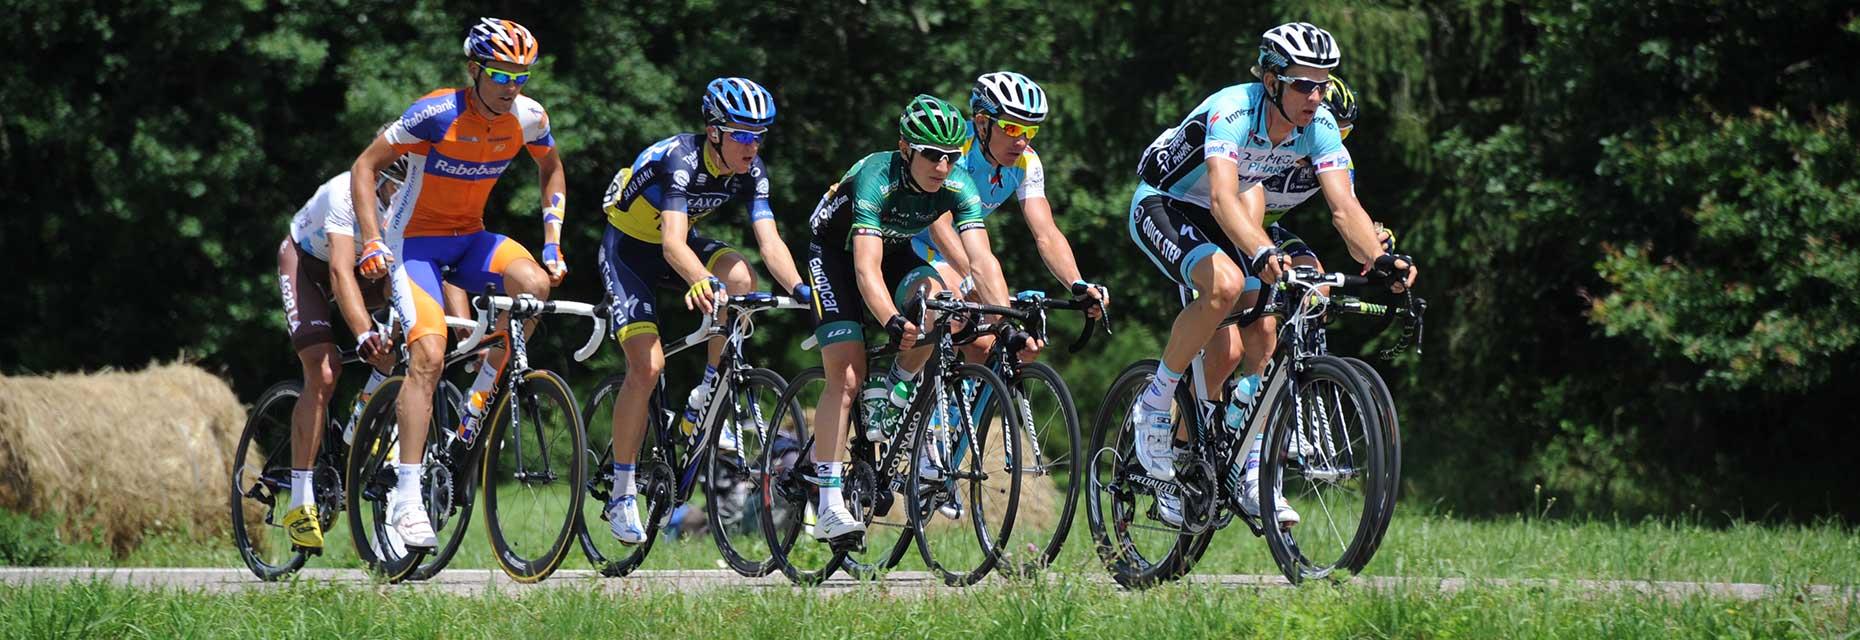 Tour de France-fietser rijdt door Haute-Saône